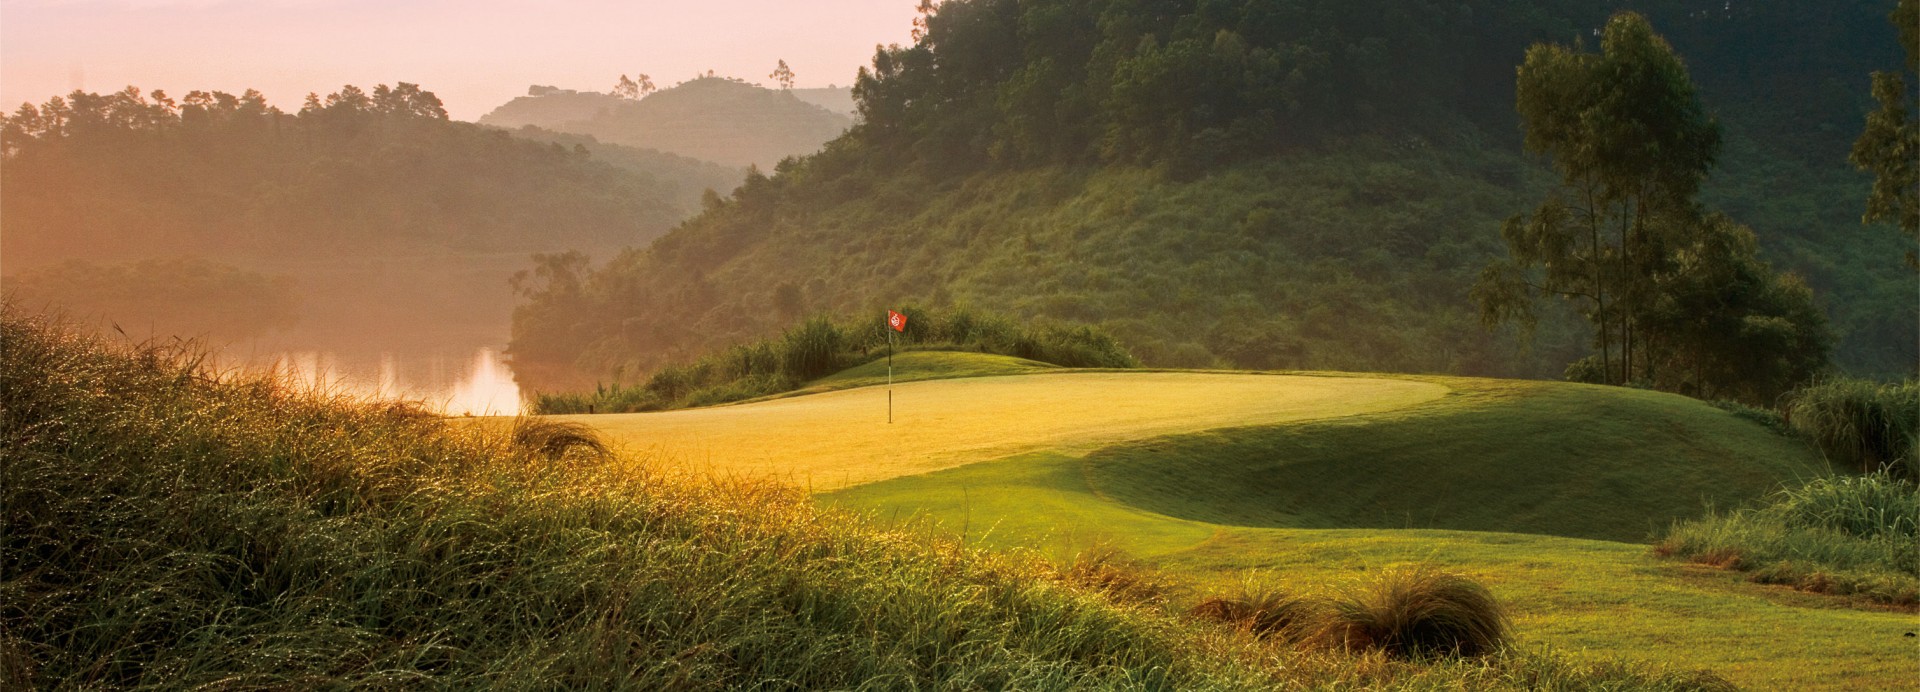 Mission Hills - Dongguan - Leadbetter Course  | Golfové zájezdy, golfová dovolená, luxusní golf